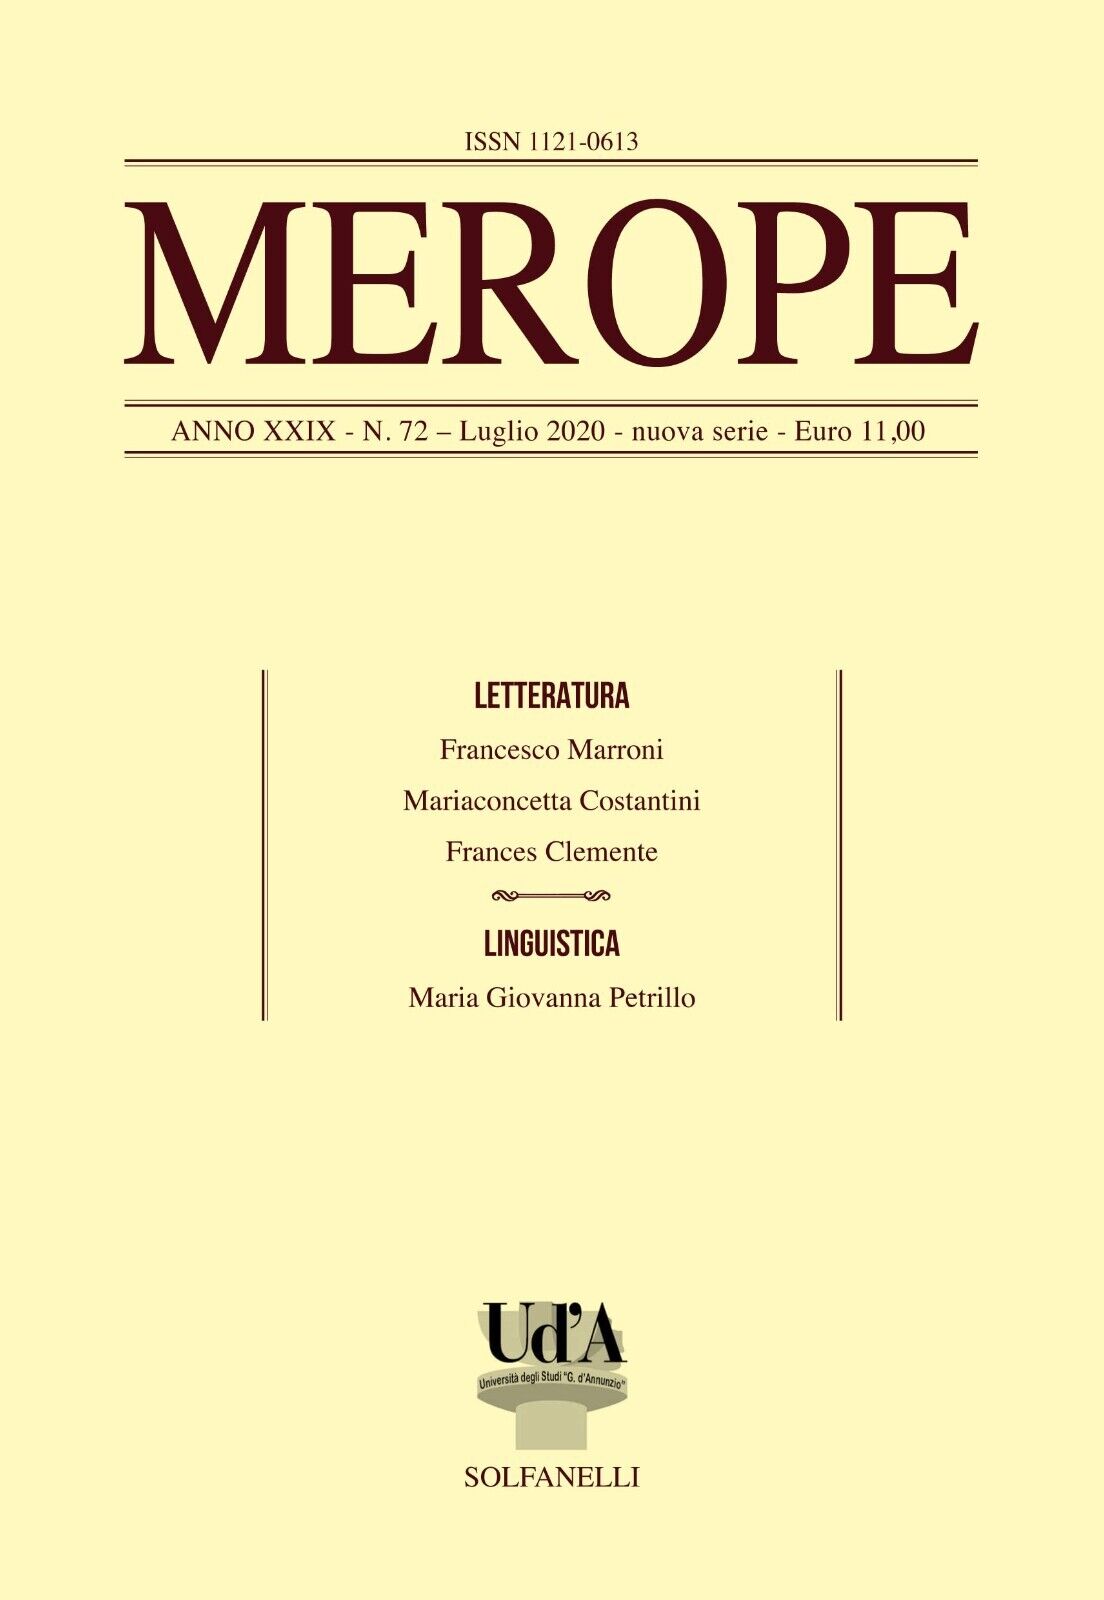 Merope n. 72 di F. Marroni, F. d'Alfonso, 2020, Solfanelli